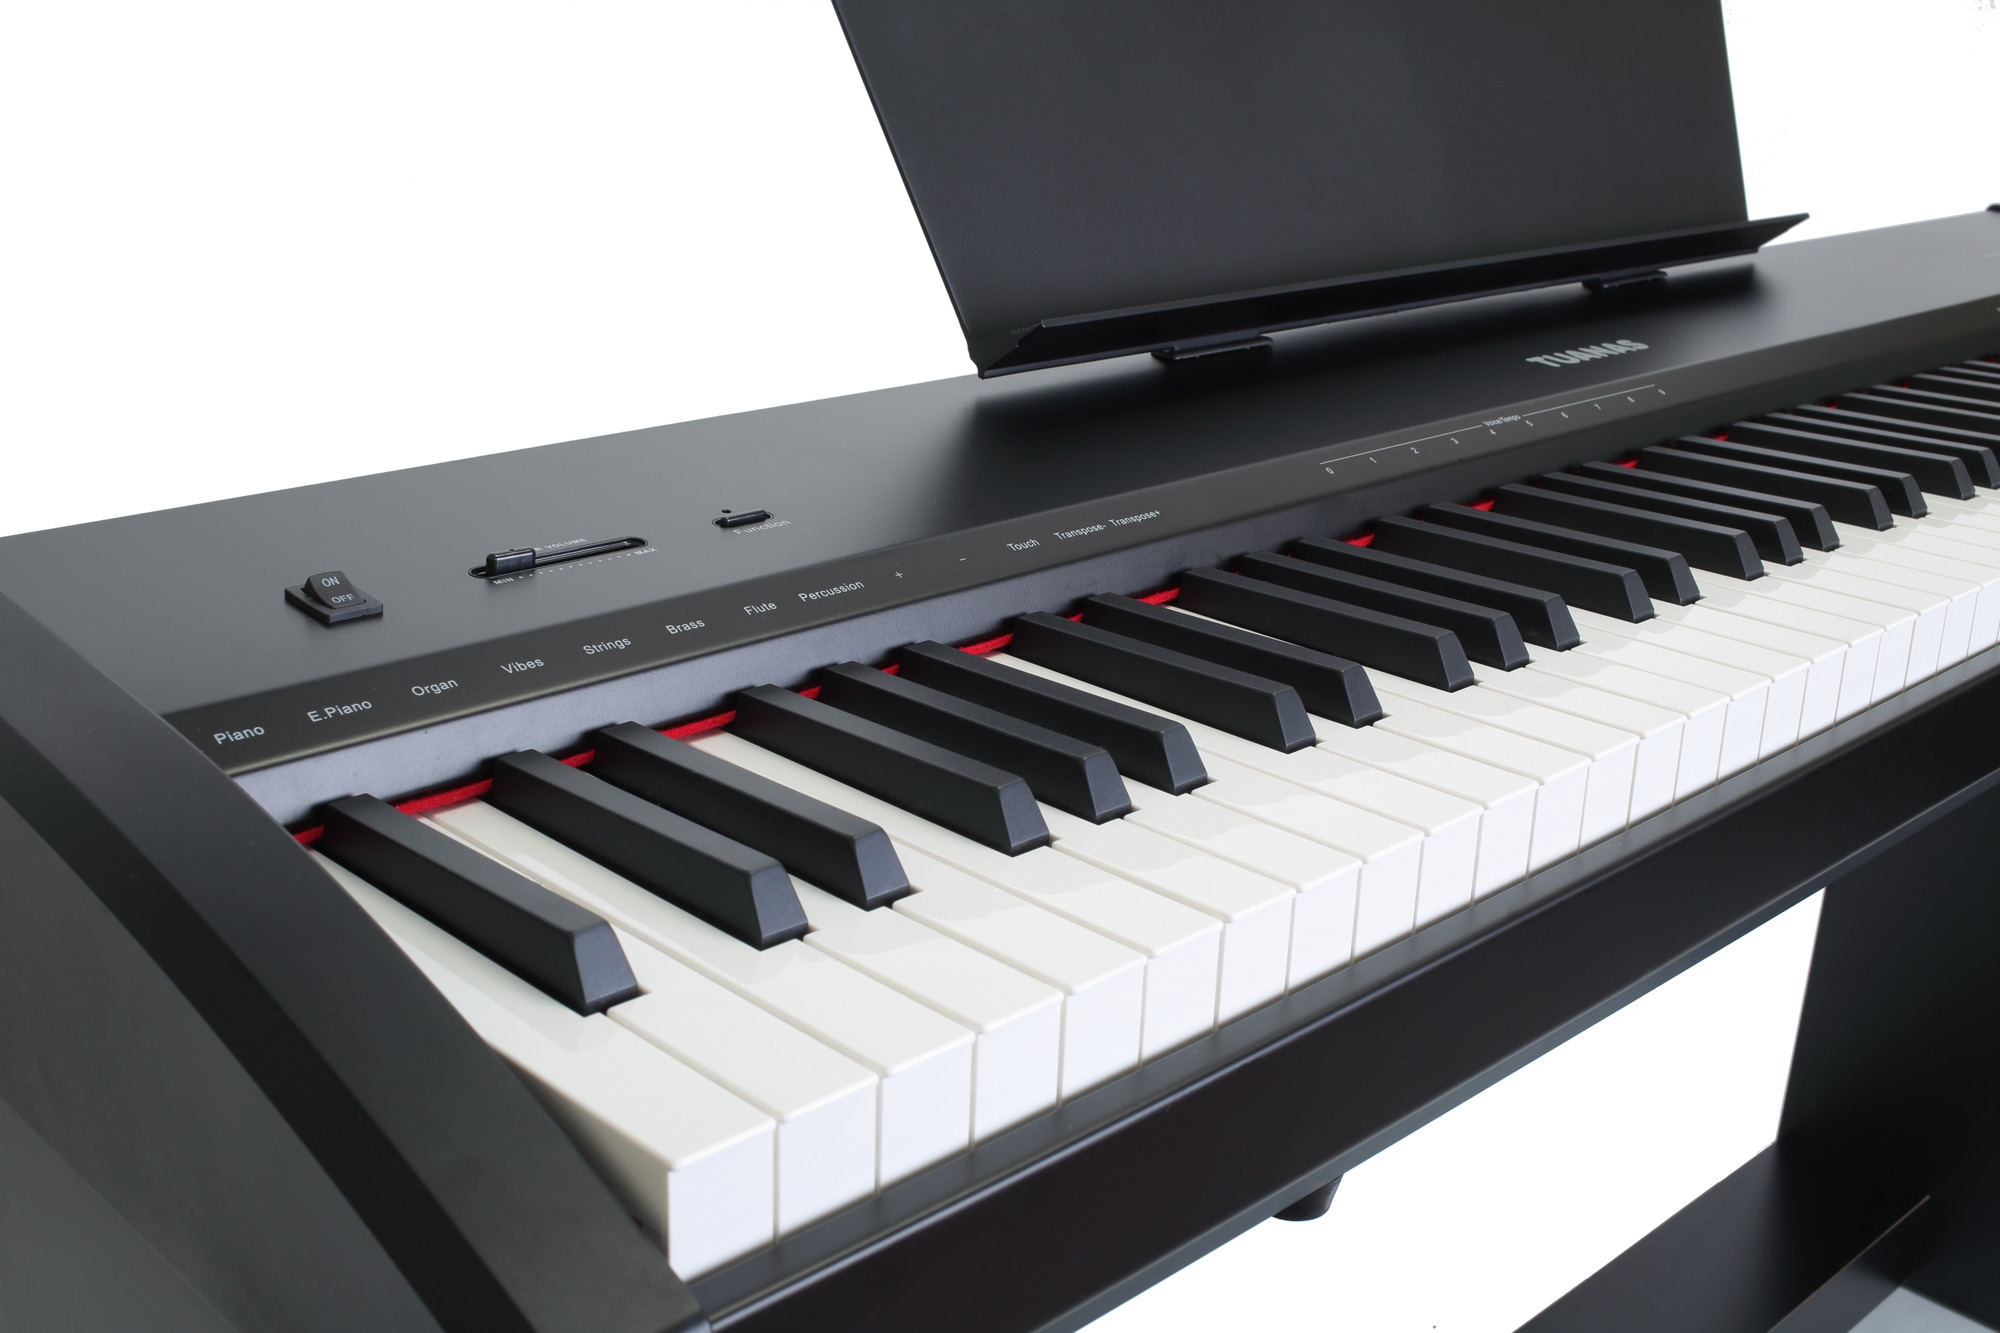 Tuanas P9BK Siyah Dijital Piyano